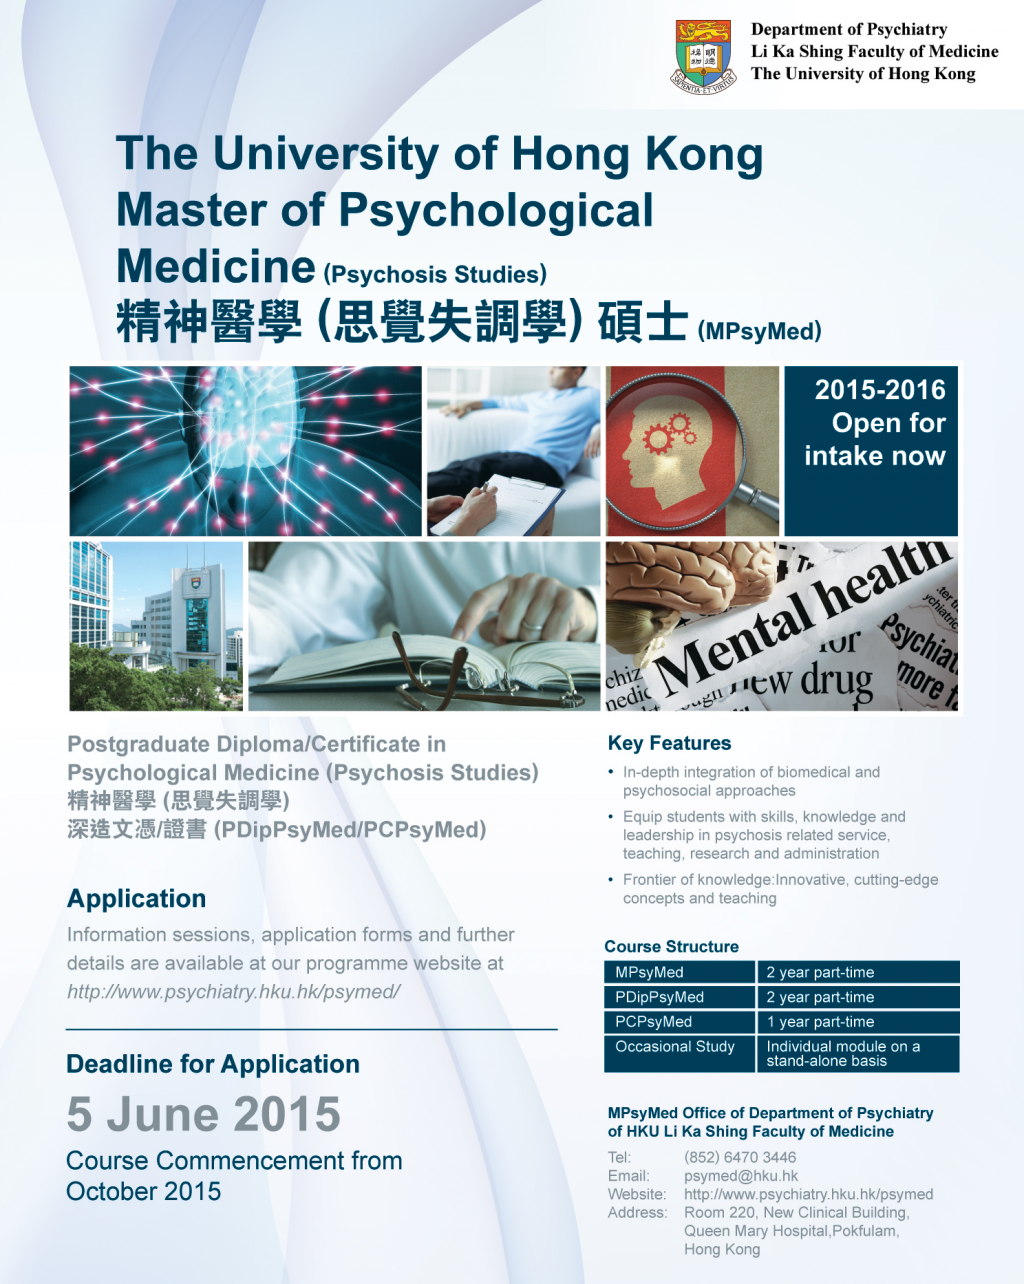 Apply HKU MPsyMed by June 5 